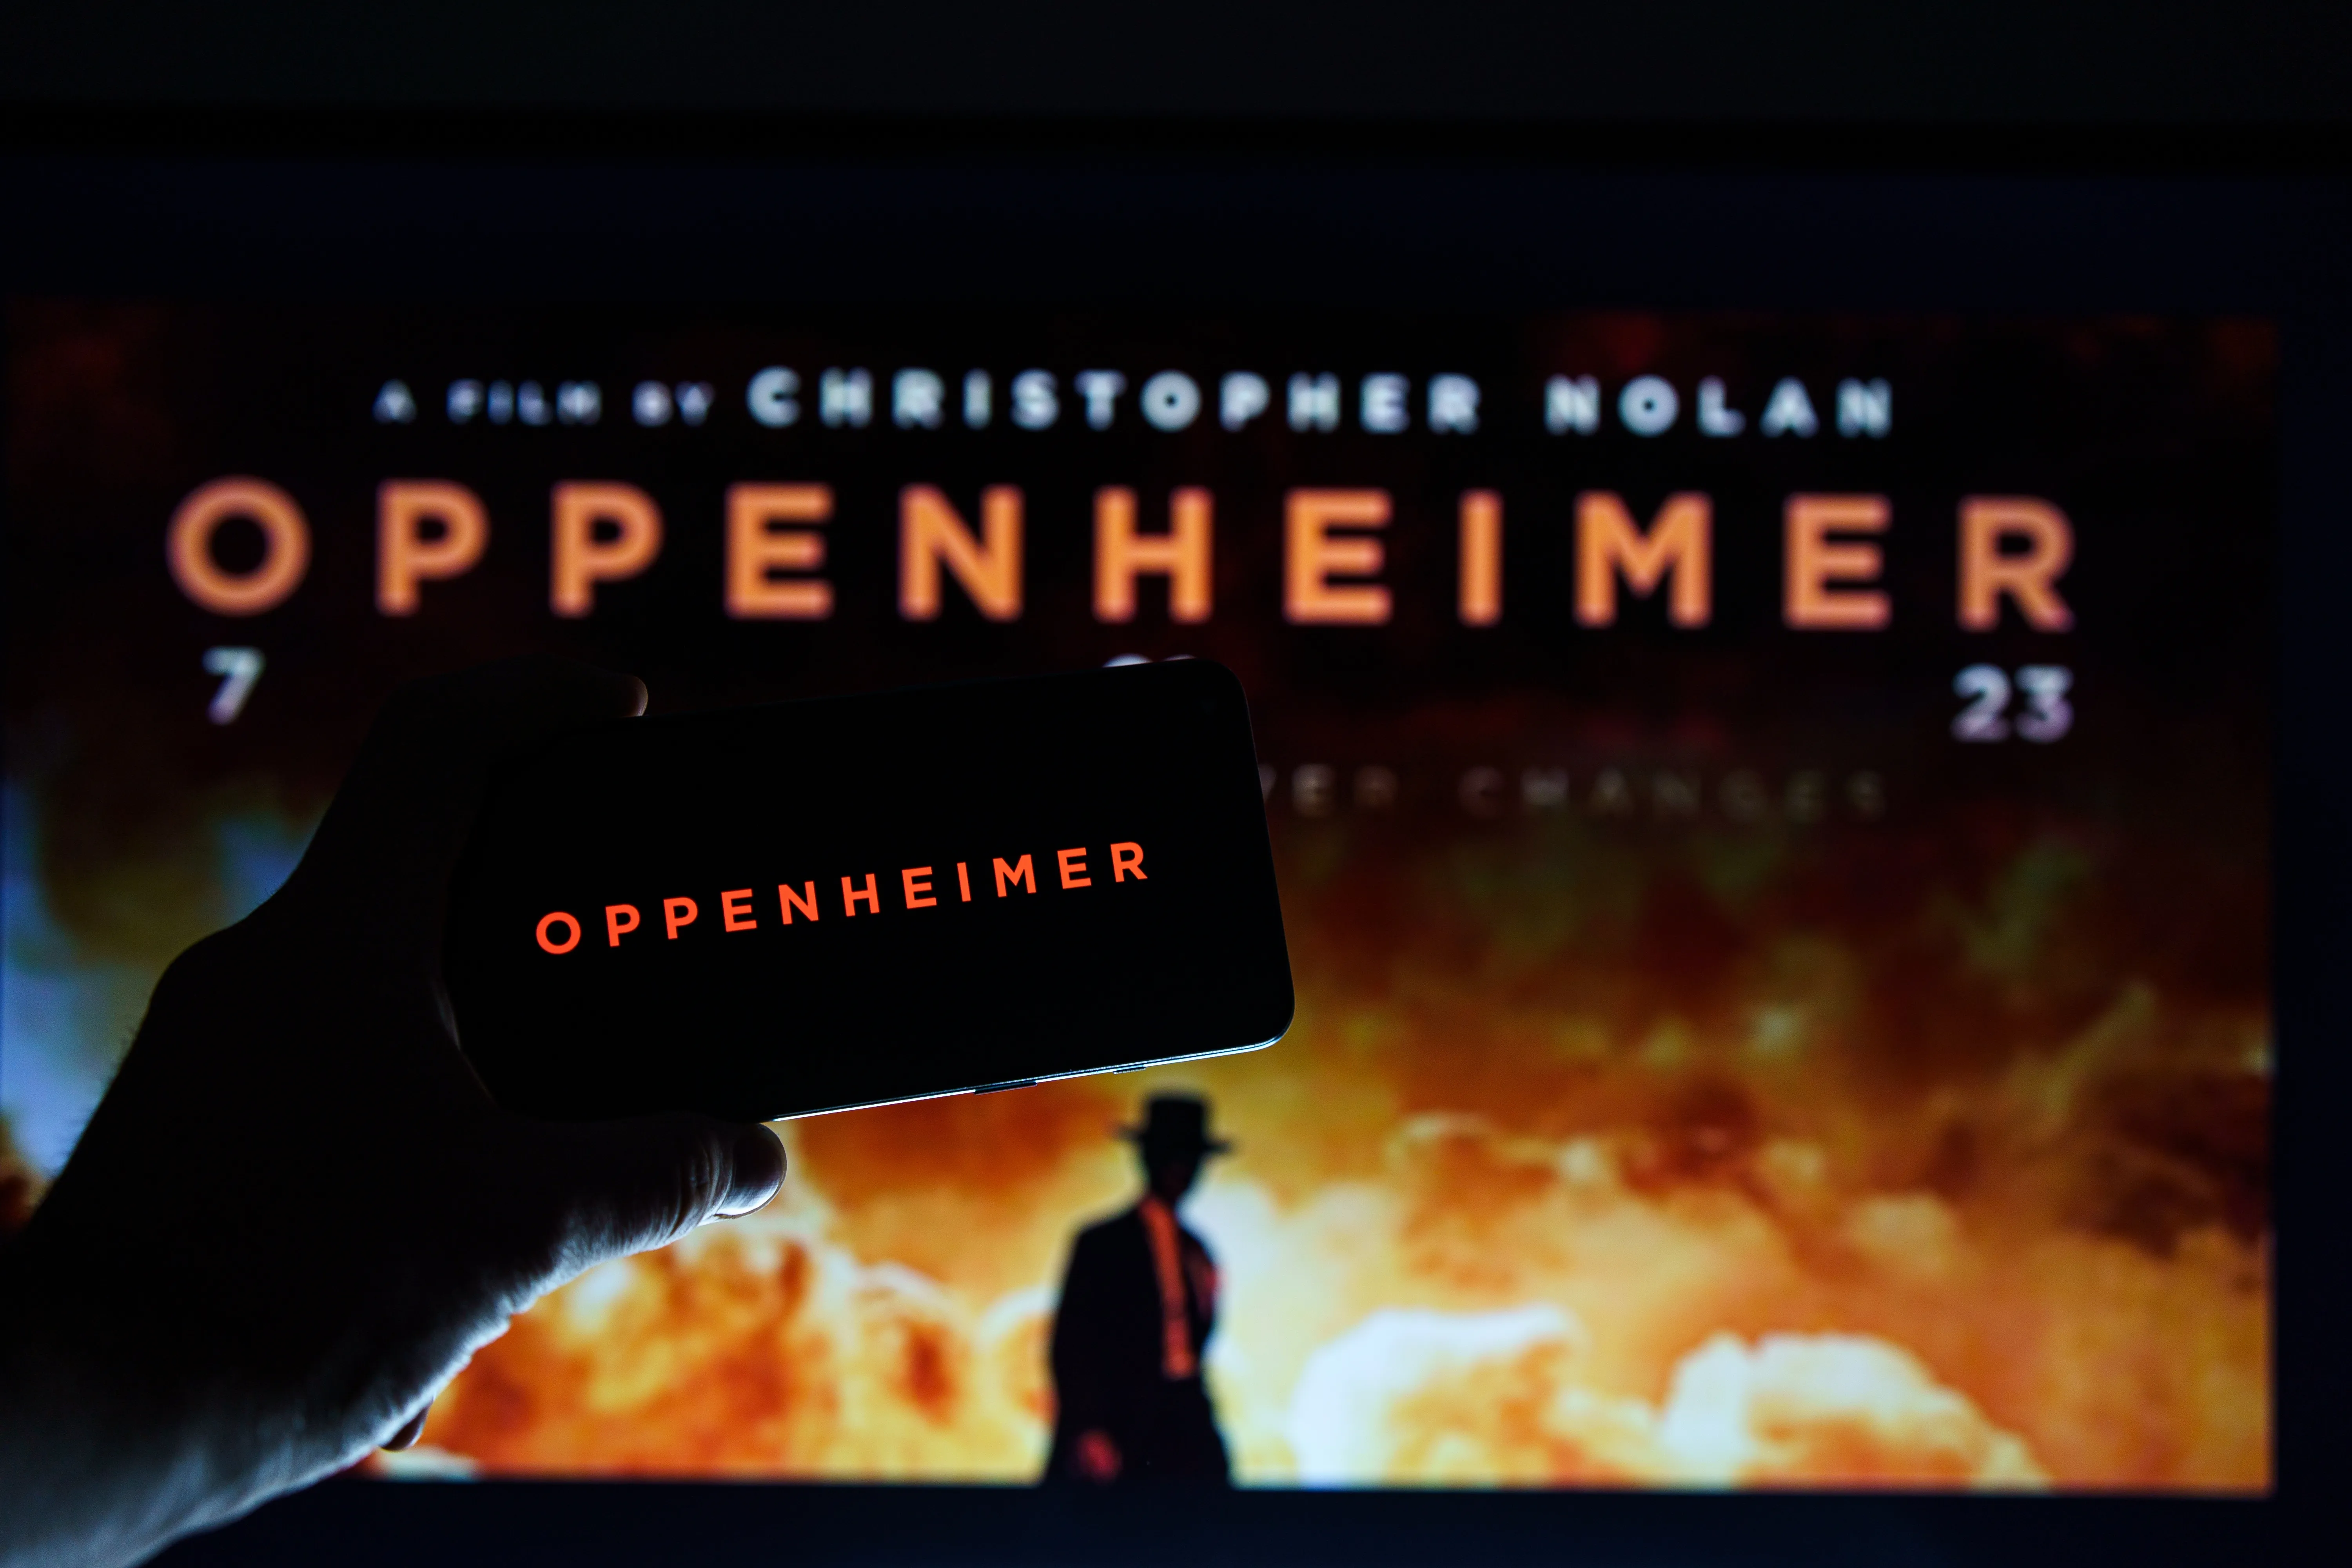 Logo de la película Oppenheimer y afiche en una pantalla.?w=200&h=150